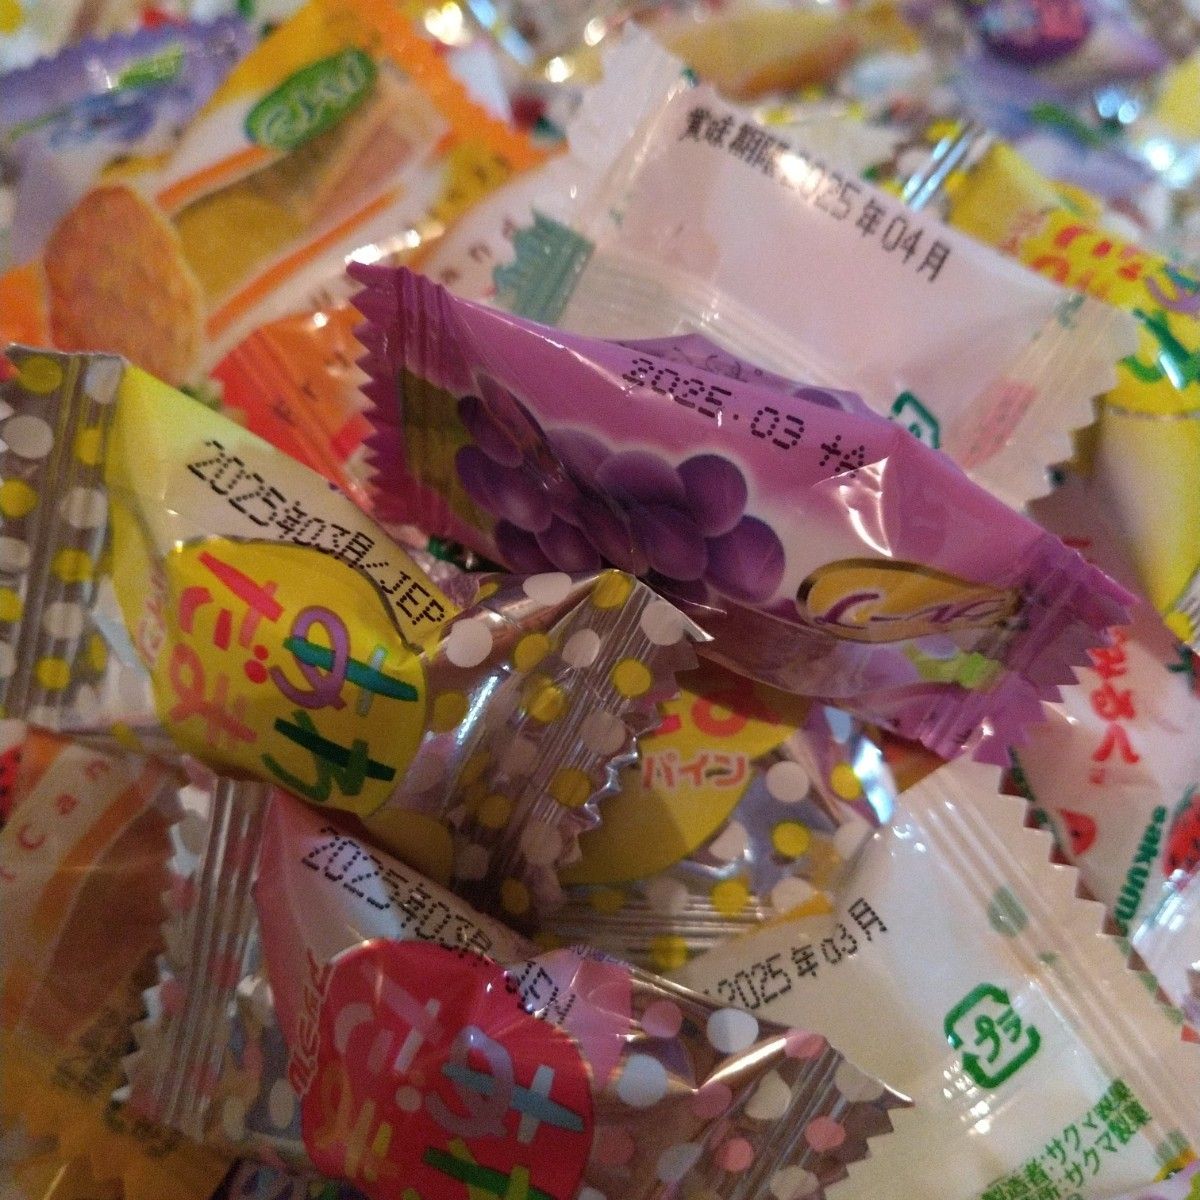 飴・パインアメ・あわだま・れもんこりっと・フルーツキャンディー他飴詰め合わせまとめ売り200個＋たまごビスケット